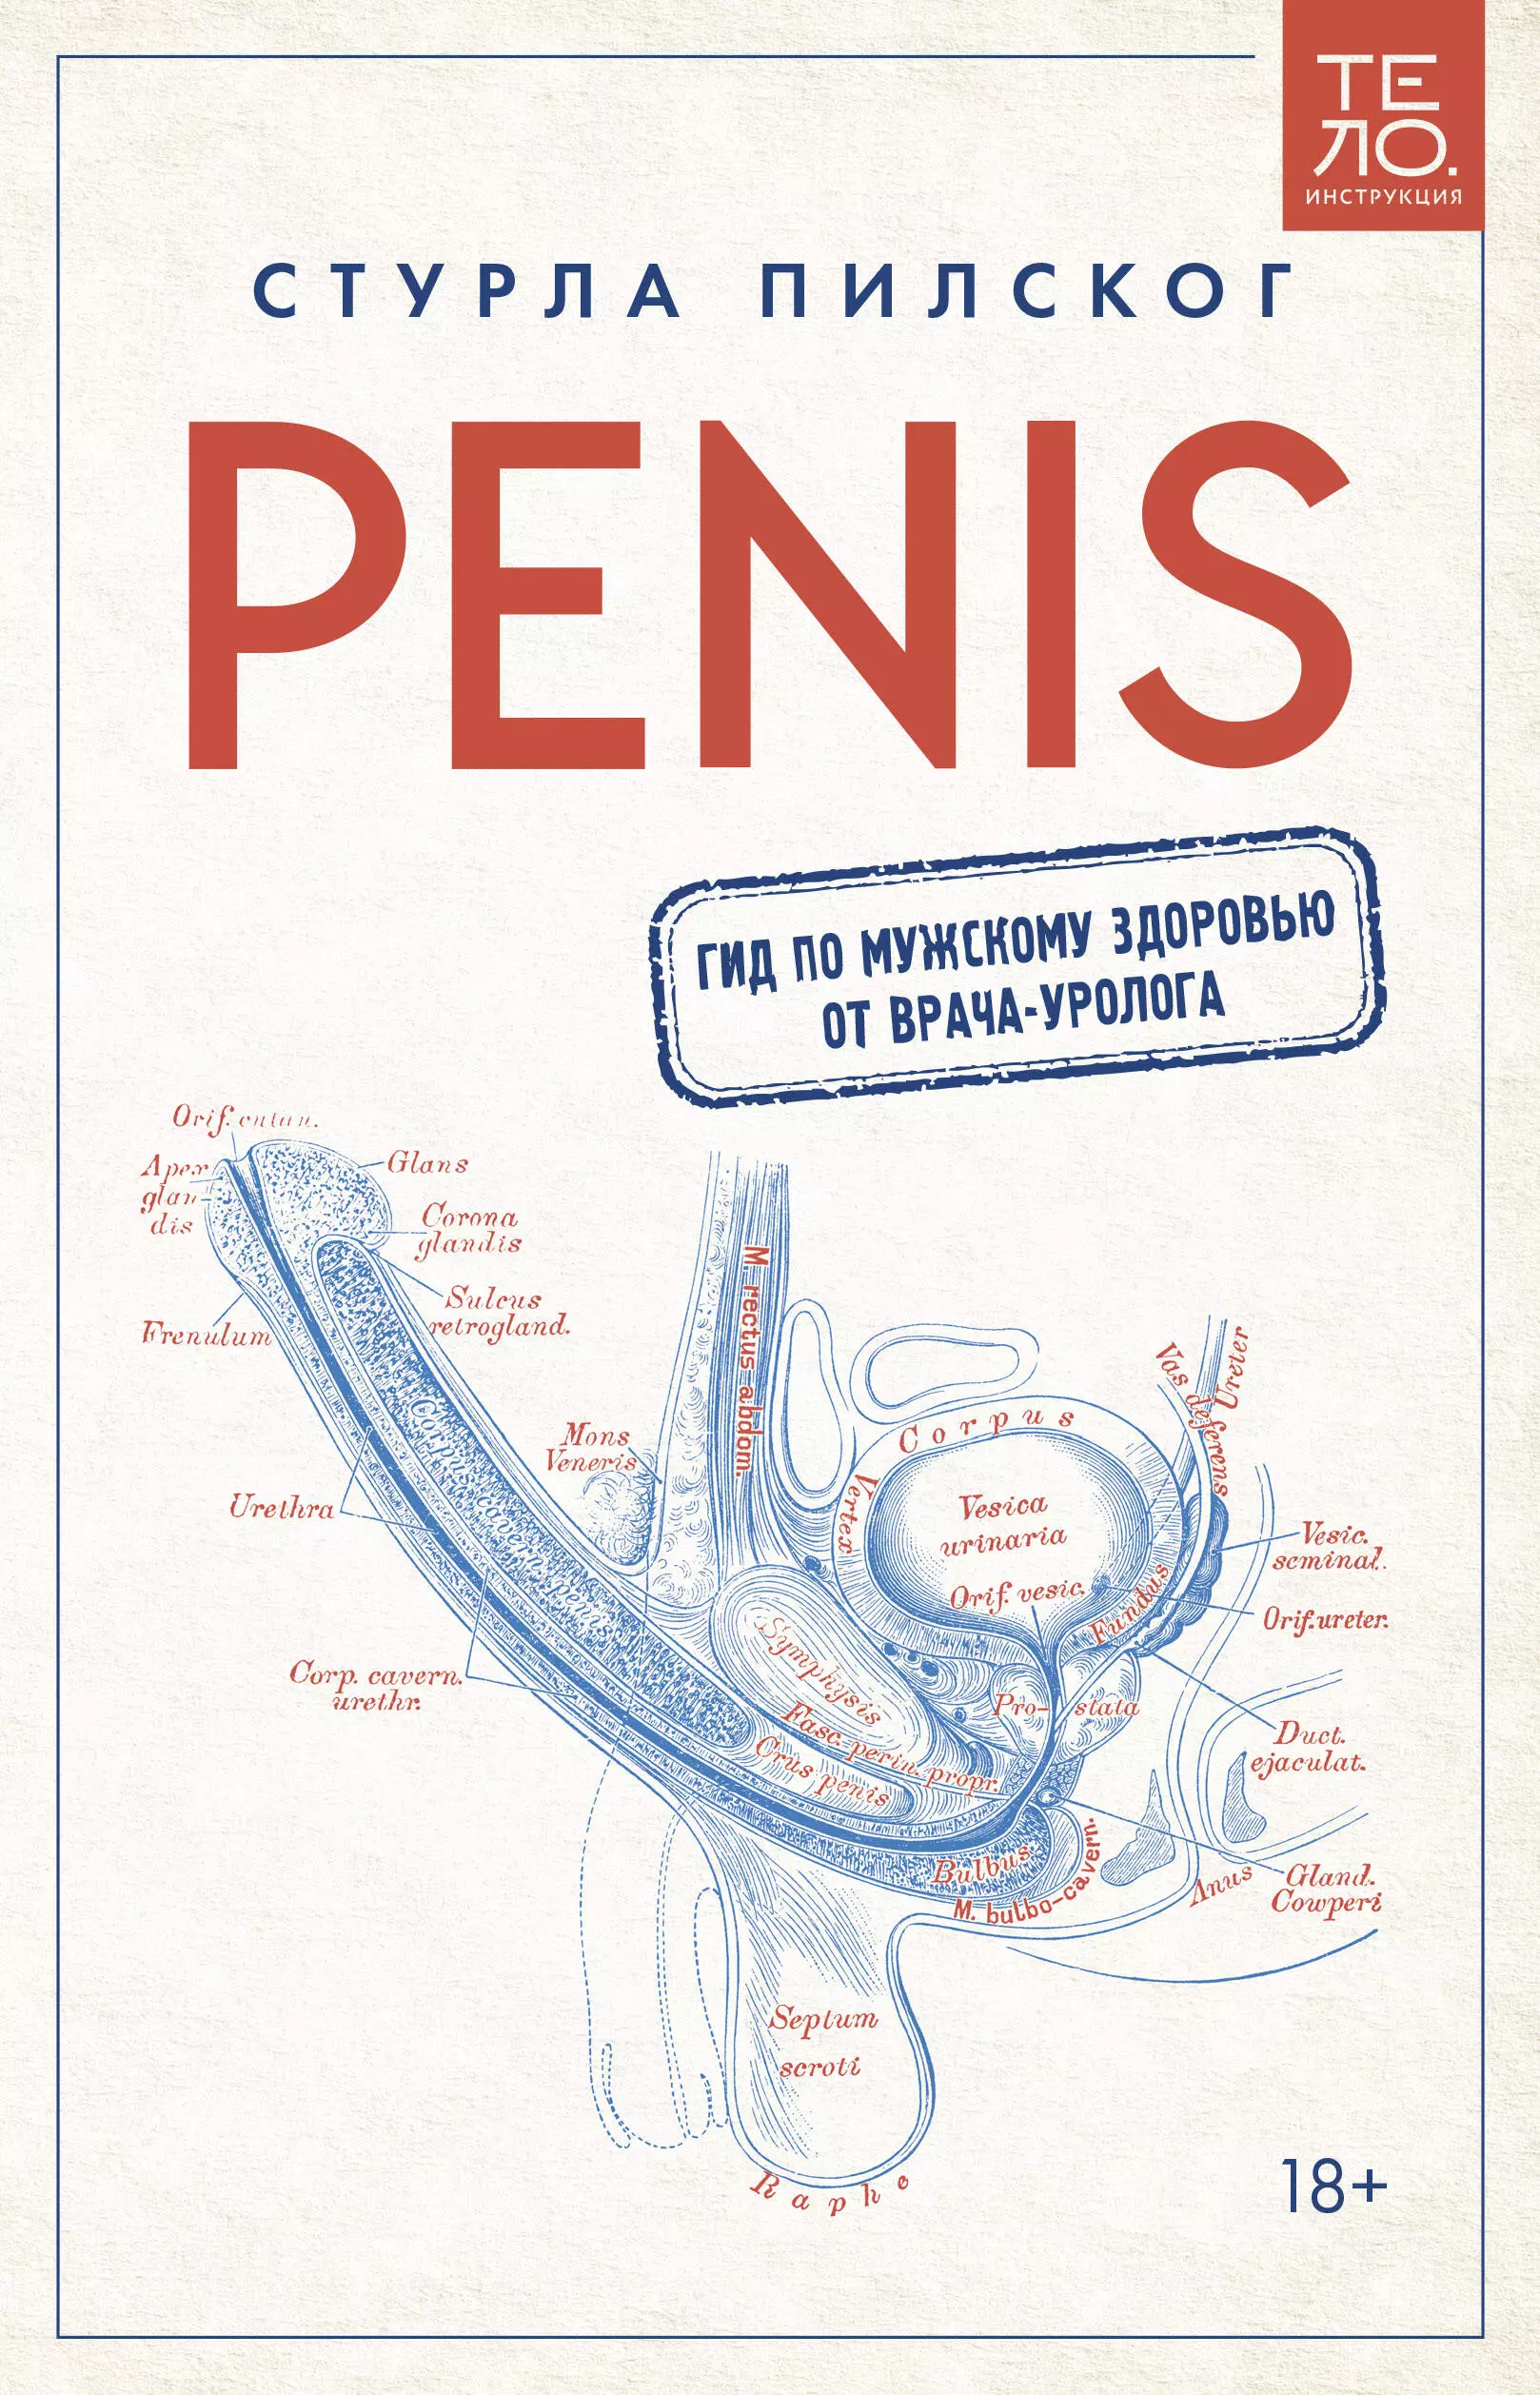 penis Penis. Гид по мужскому здоровью от врача-уролога